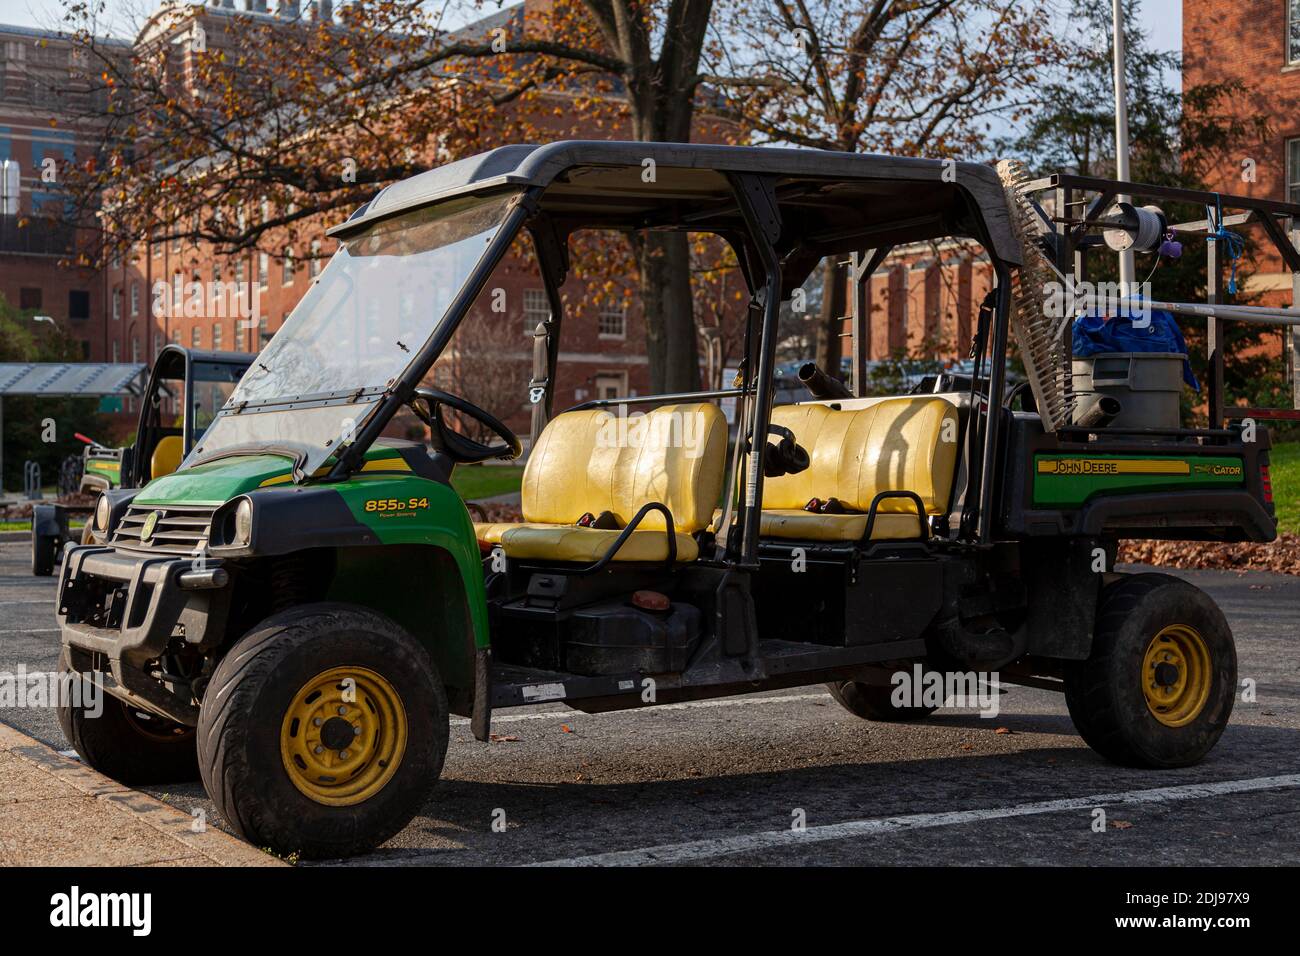 Bethesda, Maryland, USA 11-20-2020: Un veicolo di servizio crossover verde John Deere XUV 855D S4 è parcheggiato di fronte a un edificio. È usato principalmente da la Foto Stock